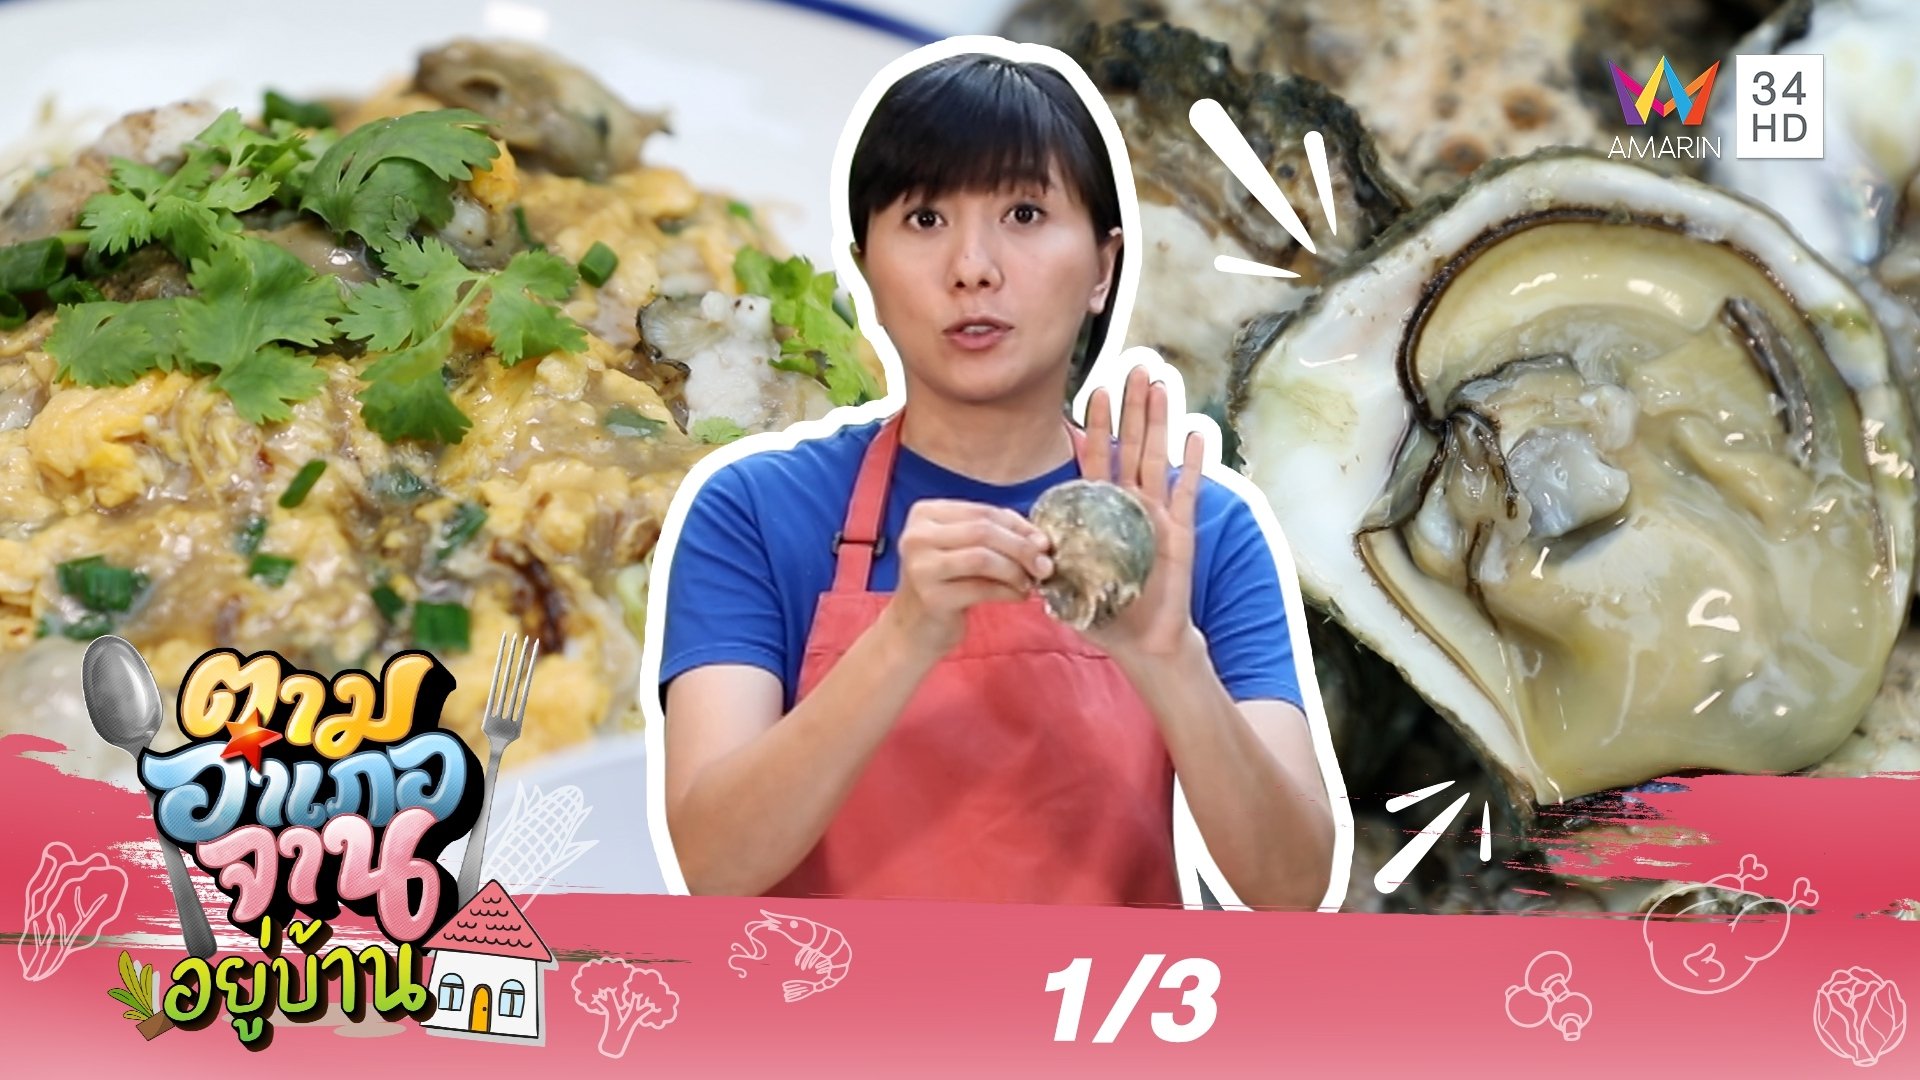 สด-ใหญ่ ต้อง 'หอยนางรม' จ.สุราษฎร์ธานี | ตามอำเภอจาน | 27 ก.พ. 64 (1/3) | AMARIN TVHD34